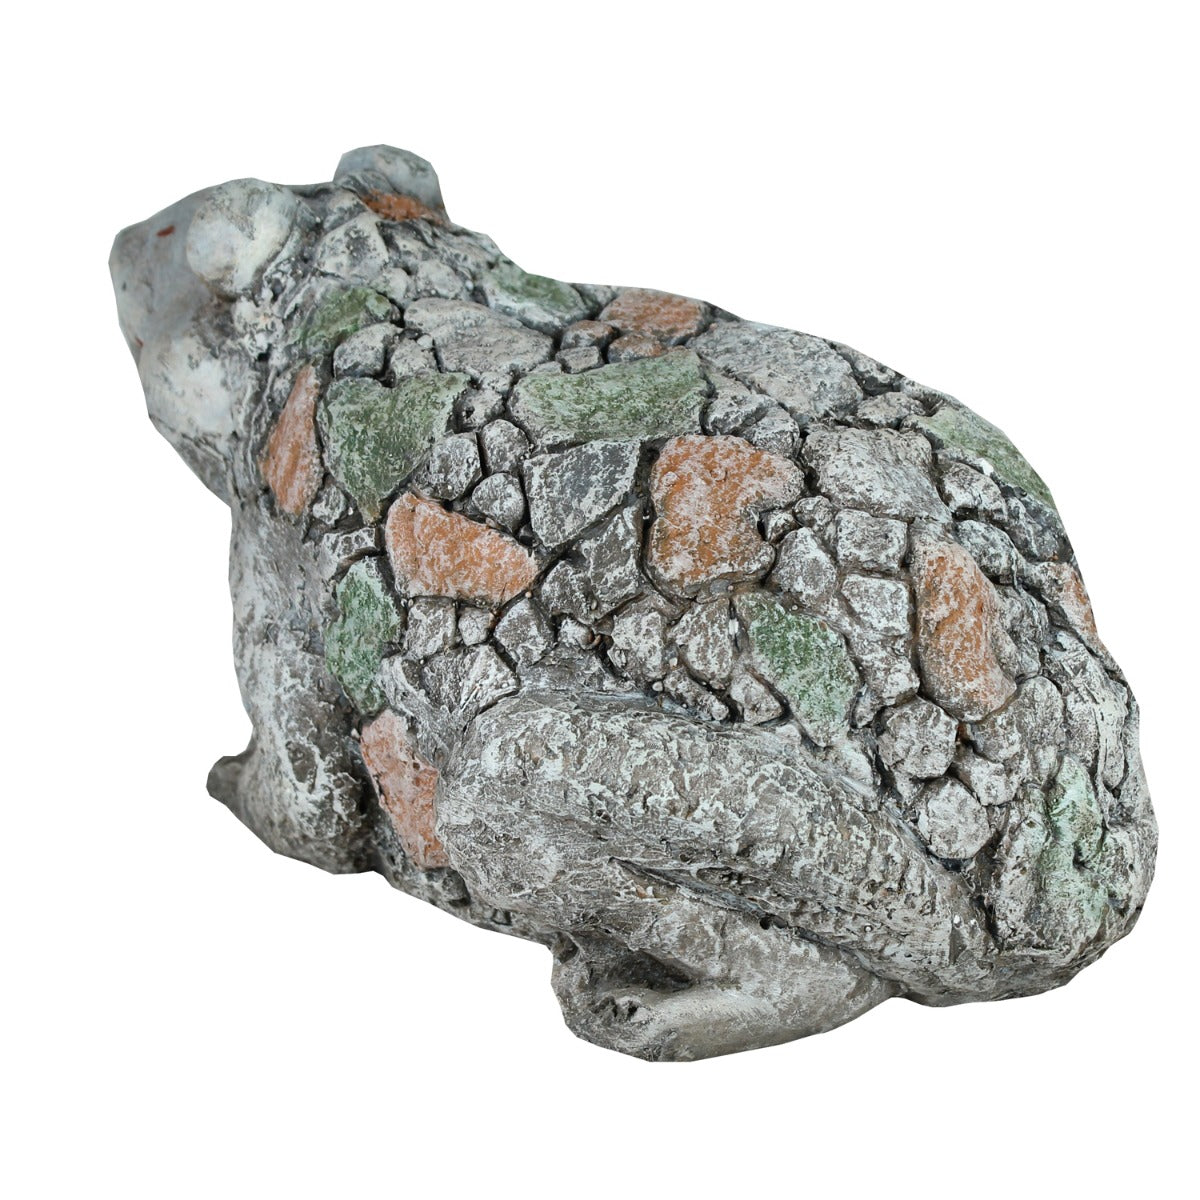 Frosch Figur in Stein Optik Gartenfigur Frosch Deko Tierfigur